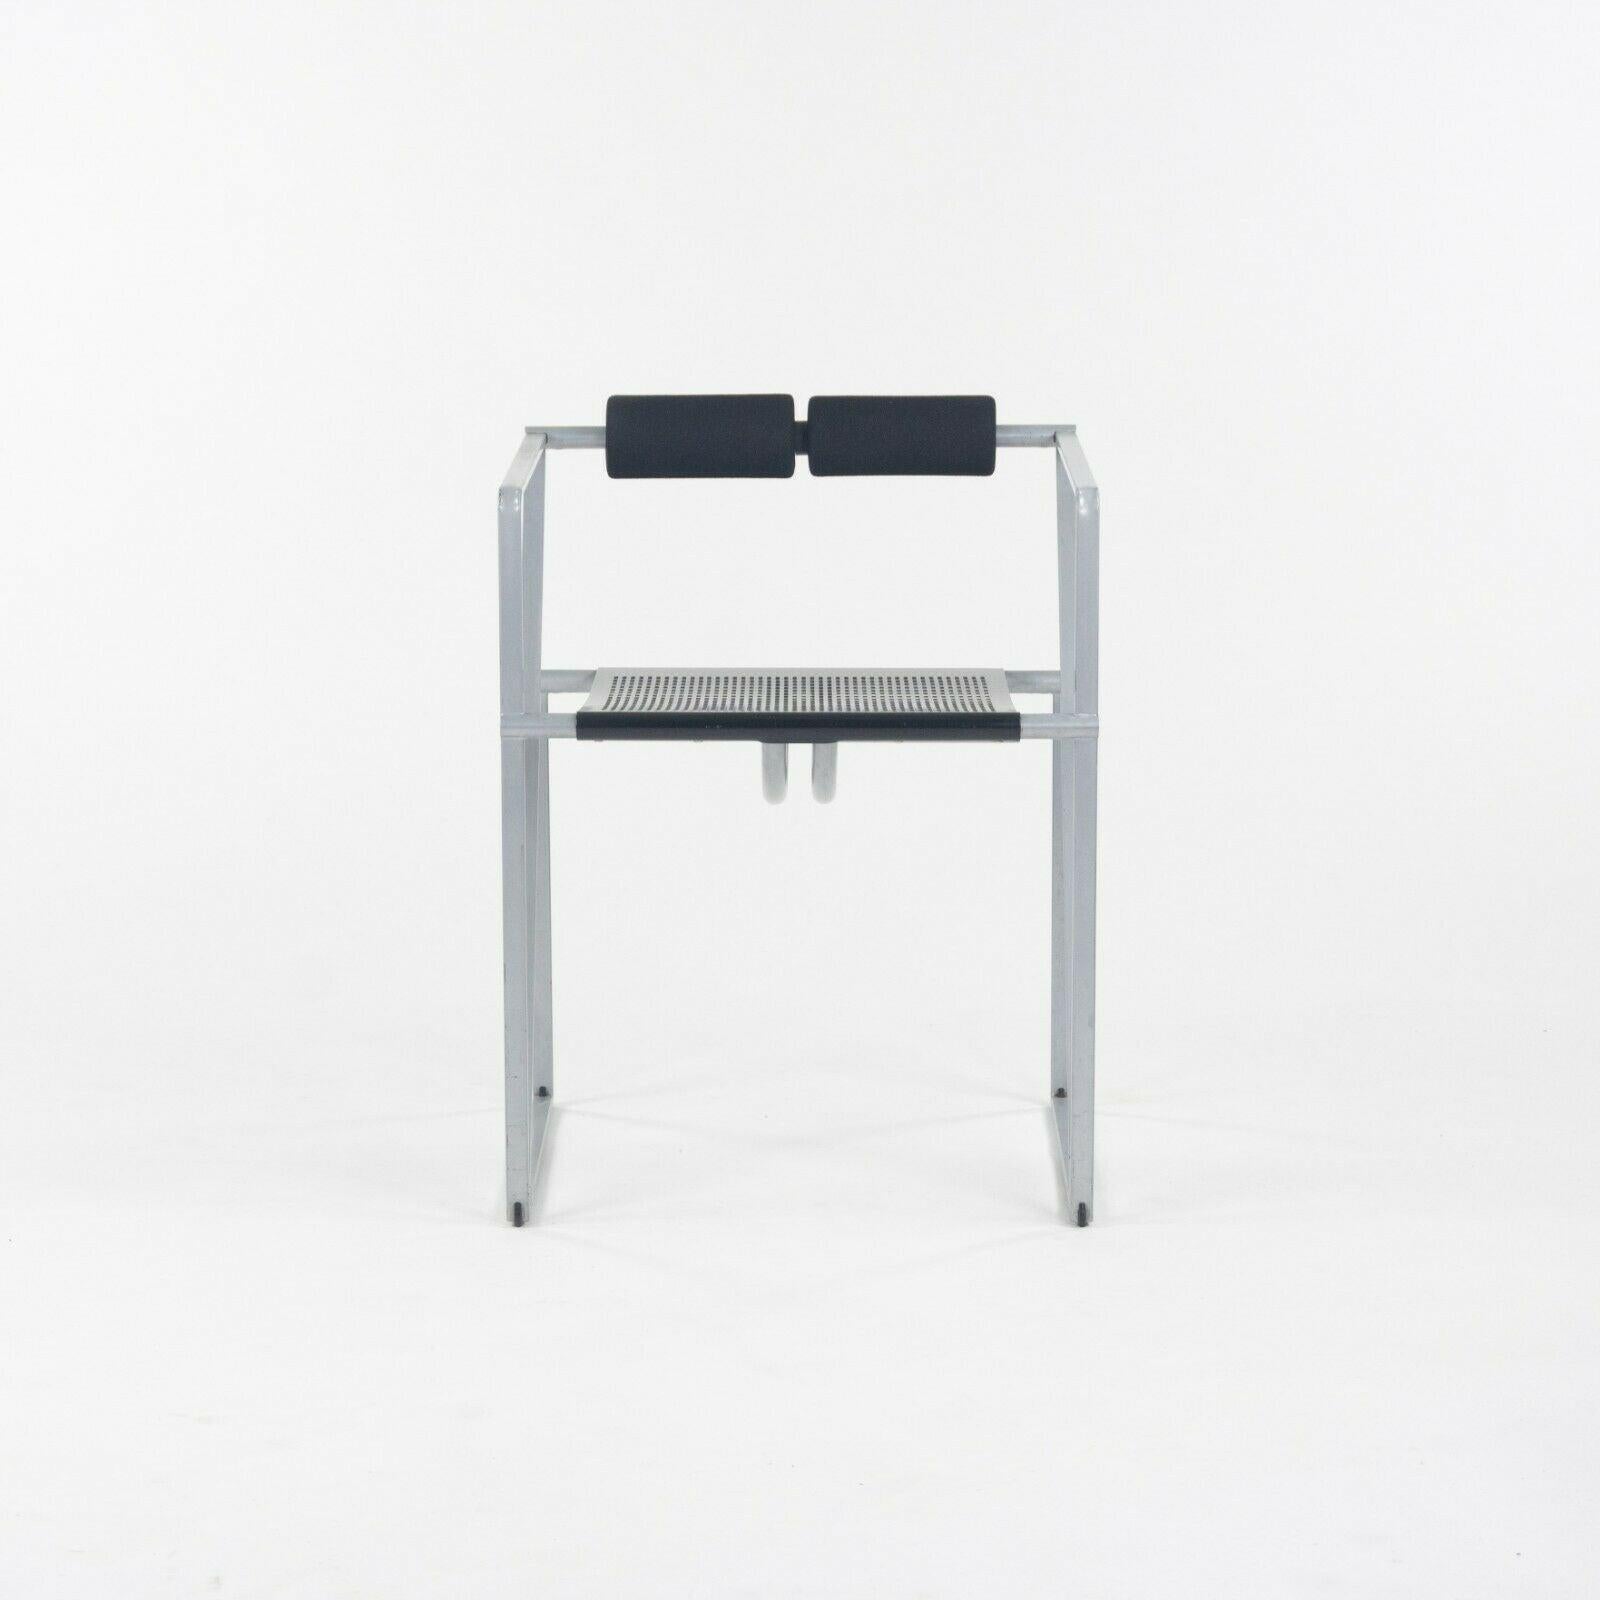 La vente porte sur une paire de fauteuils postmodernes Mario Botta Seconda, produits par Alias vers le milieu des années 1980. Il s'agit d'œuvres magnifiques et emblématiques de Botta, le célèbre architecte et designer industriel. Les chaises ont